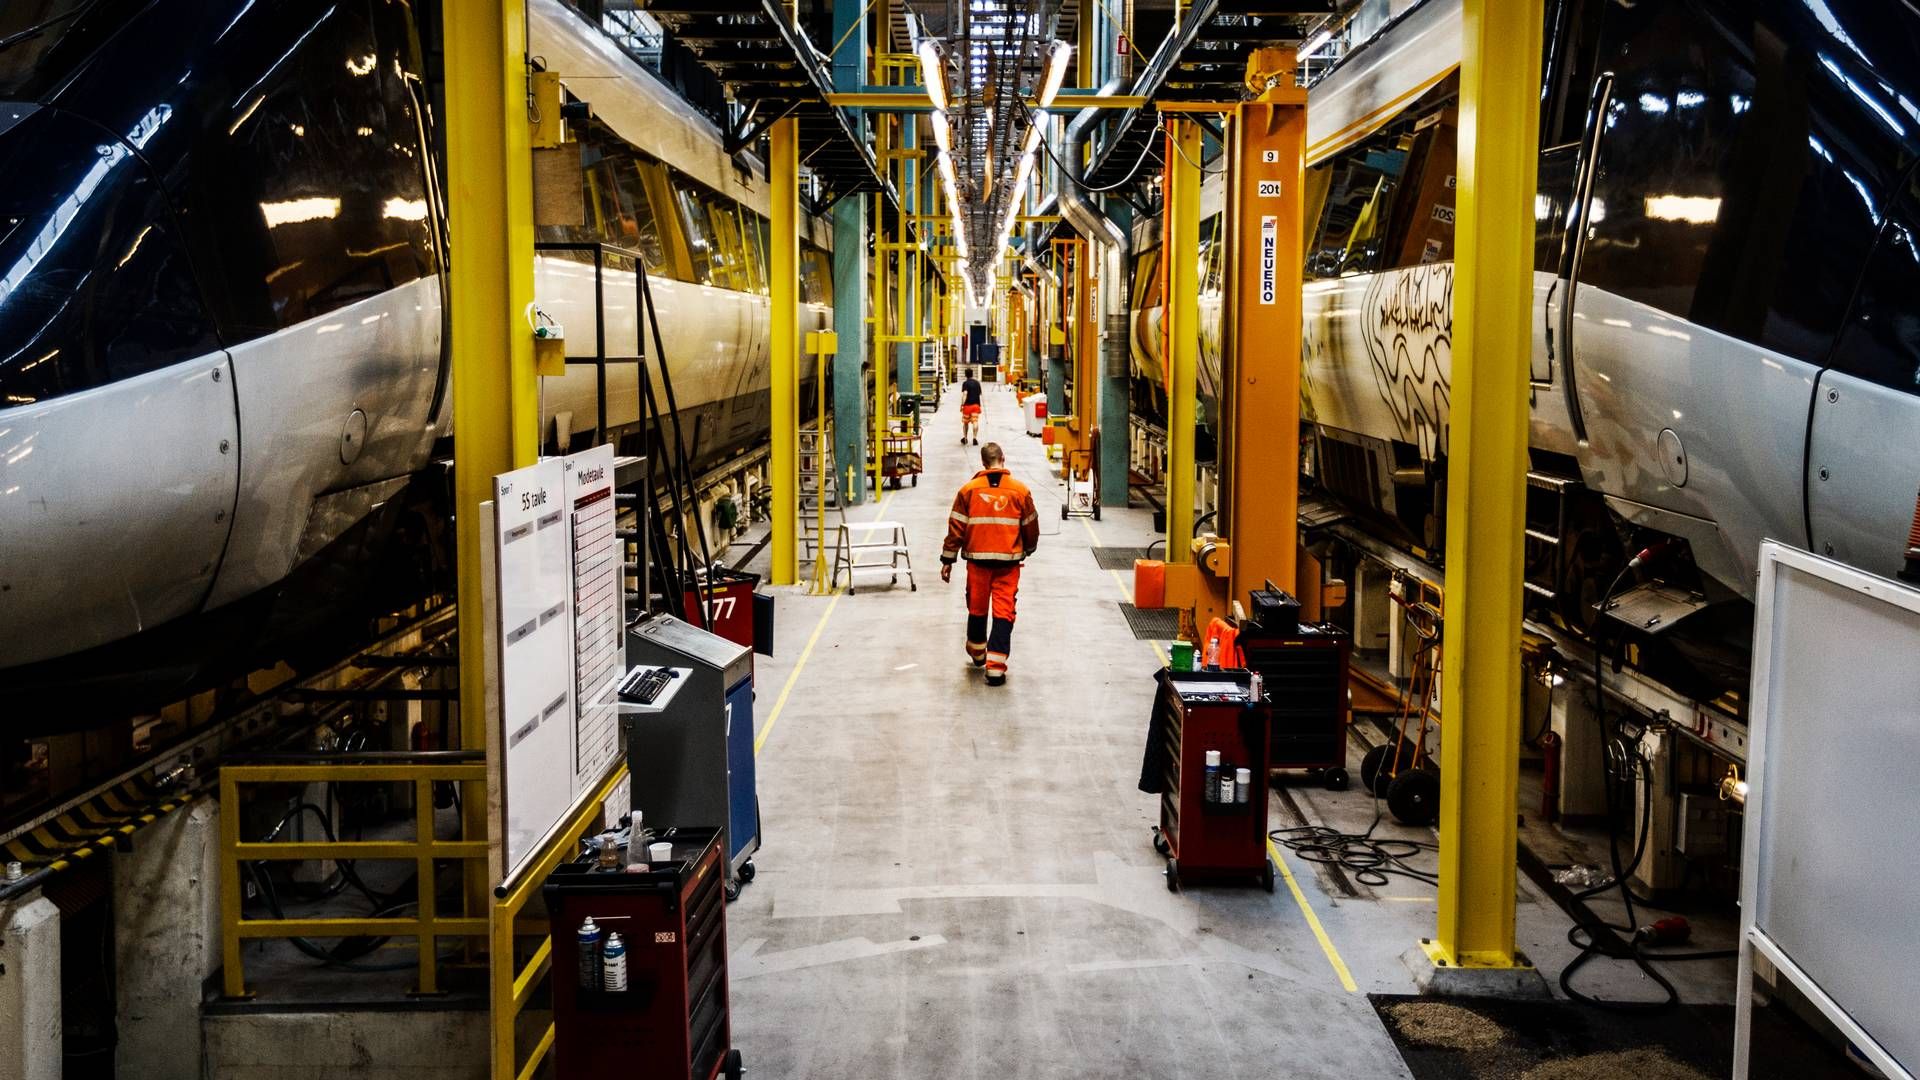 Et tilbud om 2,7 pct. i lønstigning fik mandag medarbejdere på DSB's værksteder til at nedlægge arbejdet ulovligt. De genoptog arbejde torsdag morgen. | Foto: Mikkel Berg Pedersen